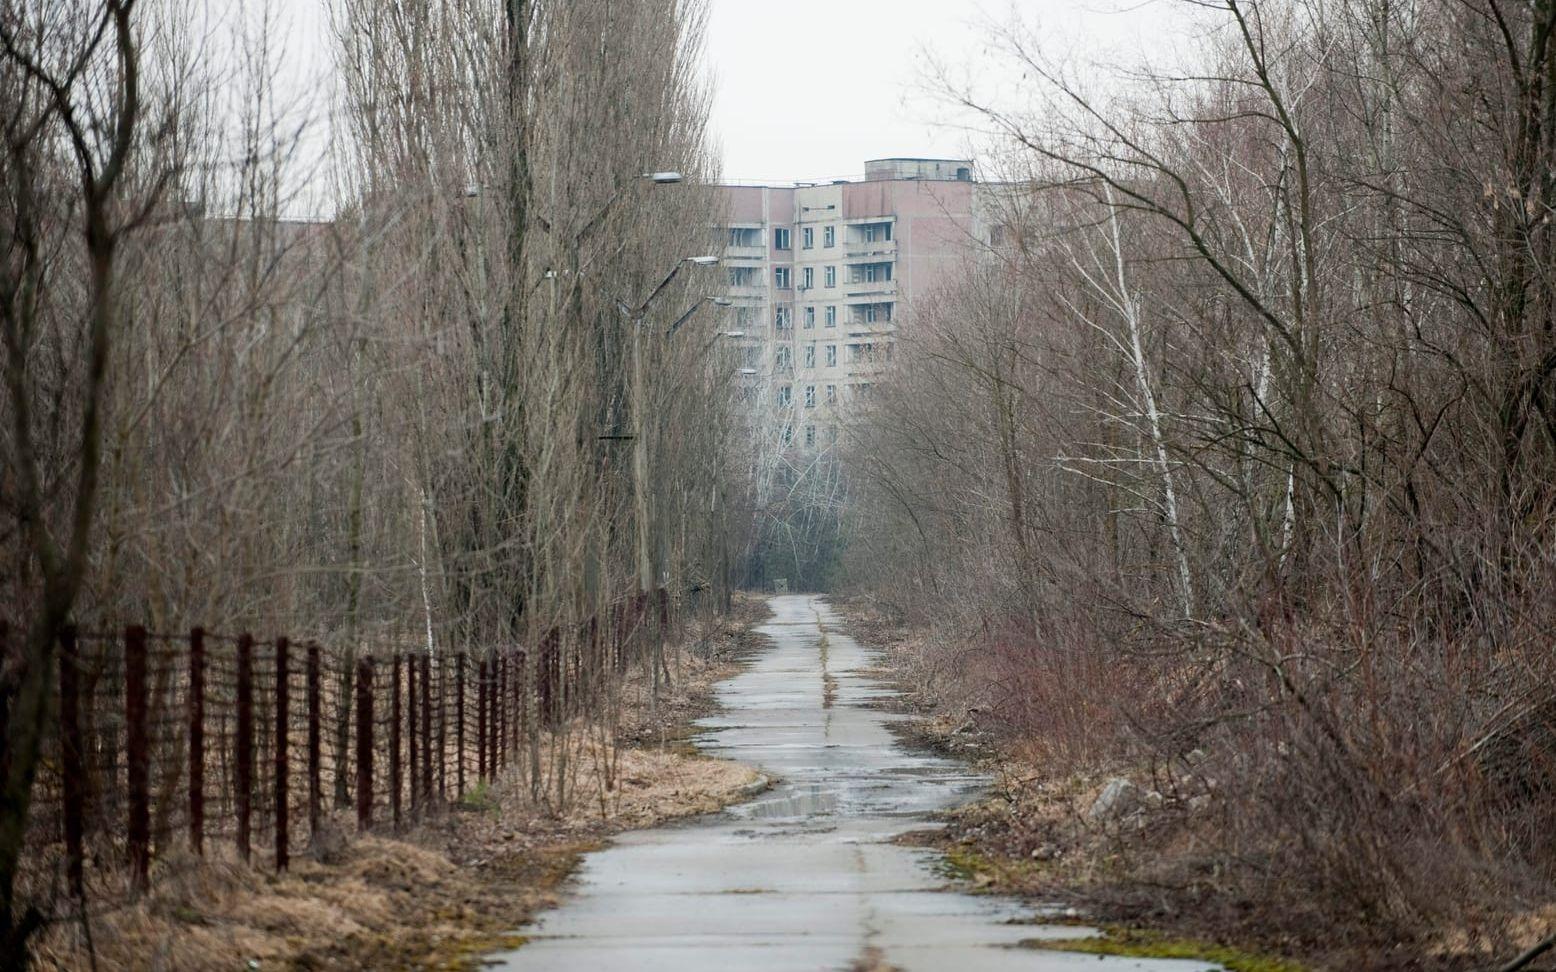 Pripjat ligger cirka två kilometer från reaktor 4 i Tjernobyl. 